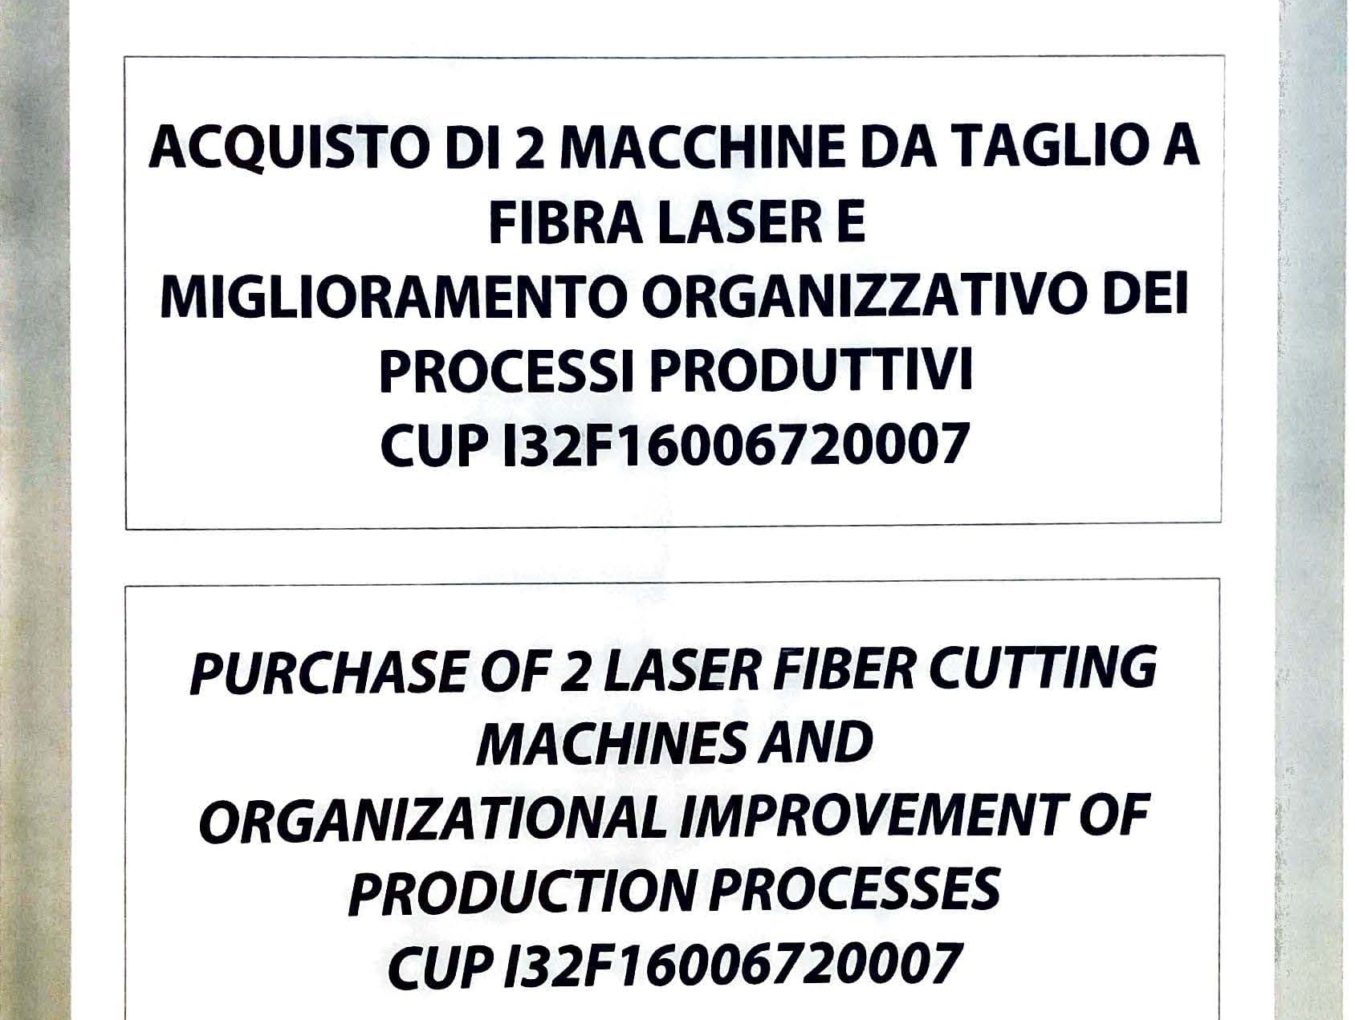 ACQUISTO DI 2 MACCHINE DA TAGLIO A FIBRA LASER E MIGLIORAMENTO ORGANIZZATIVO DEI PROCESSI PRODUTTIVI CUP I32F16006720007